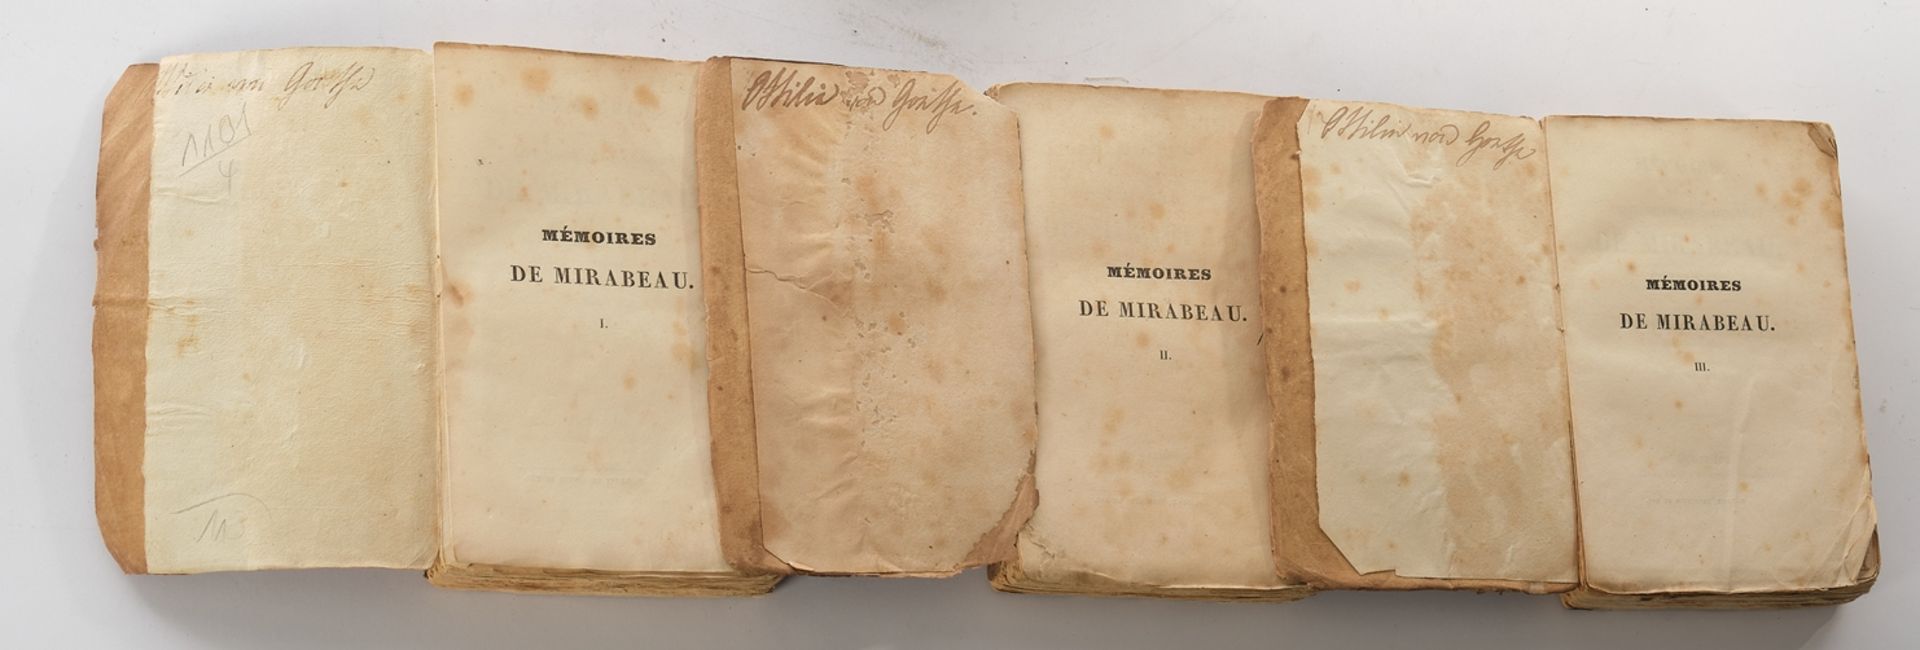 Buch, Victor Hugo, "Mémoires biographiques, littéraires et politiques de Mirabeau, écrits par lui-m - Image 3 of 4